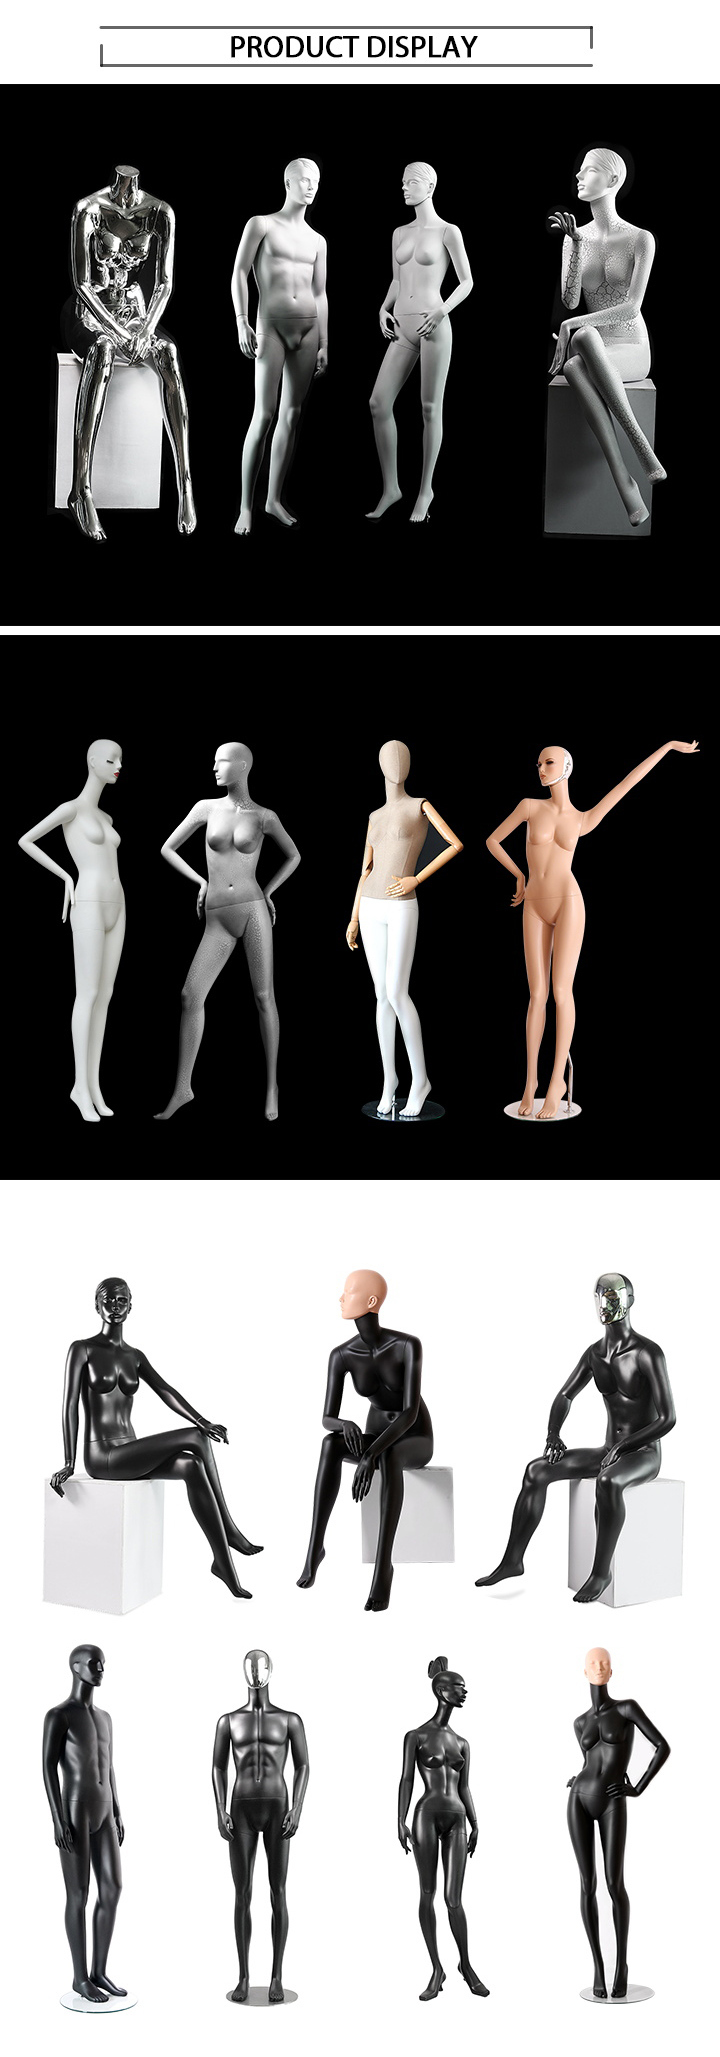 Matt Black Face Plating Window Full Body Female Mannequin Display Models